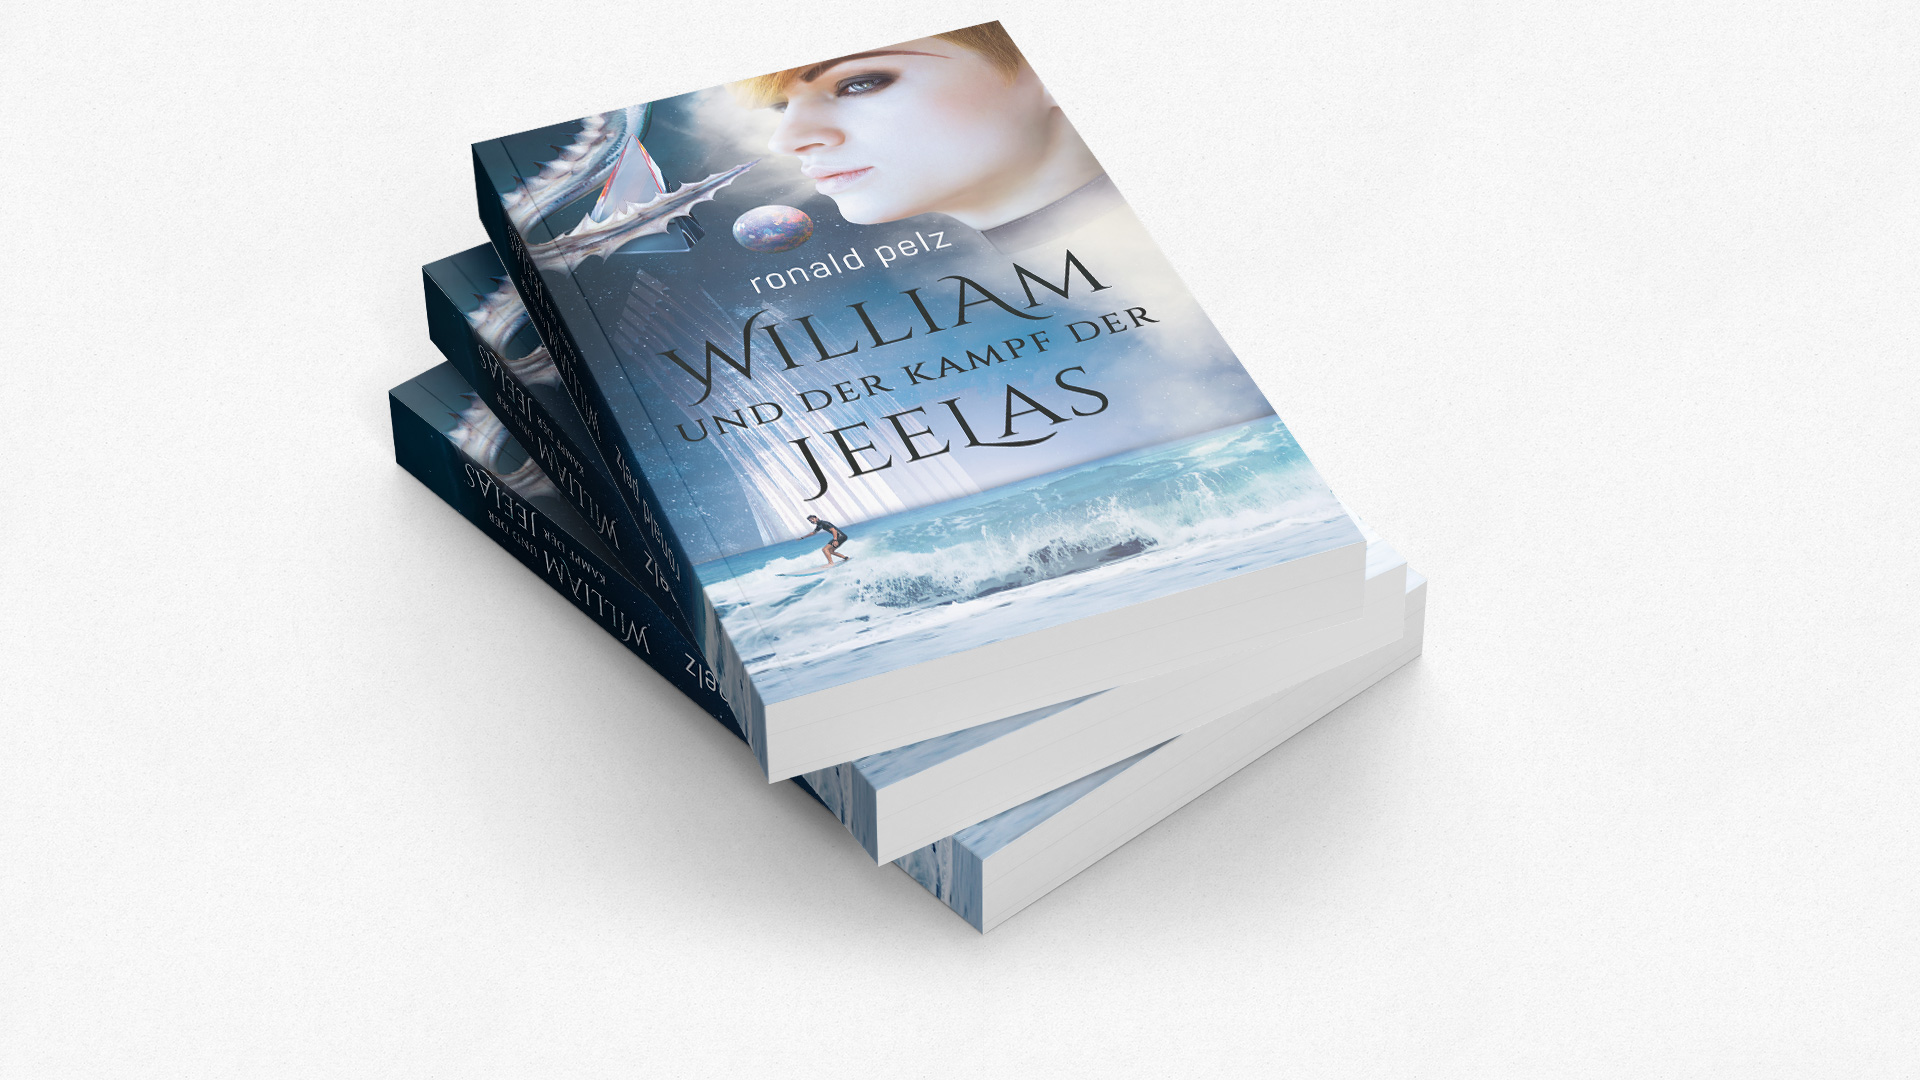 William und der Kampf der Jeelas